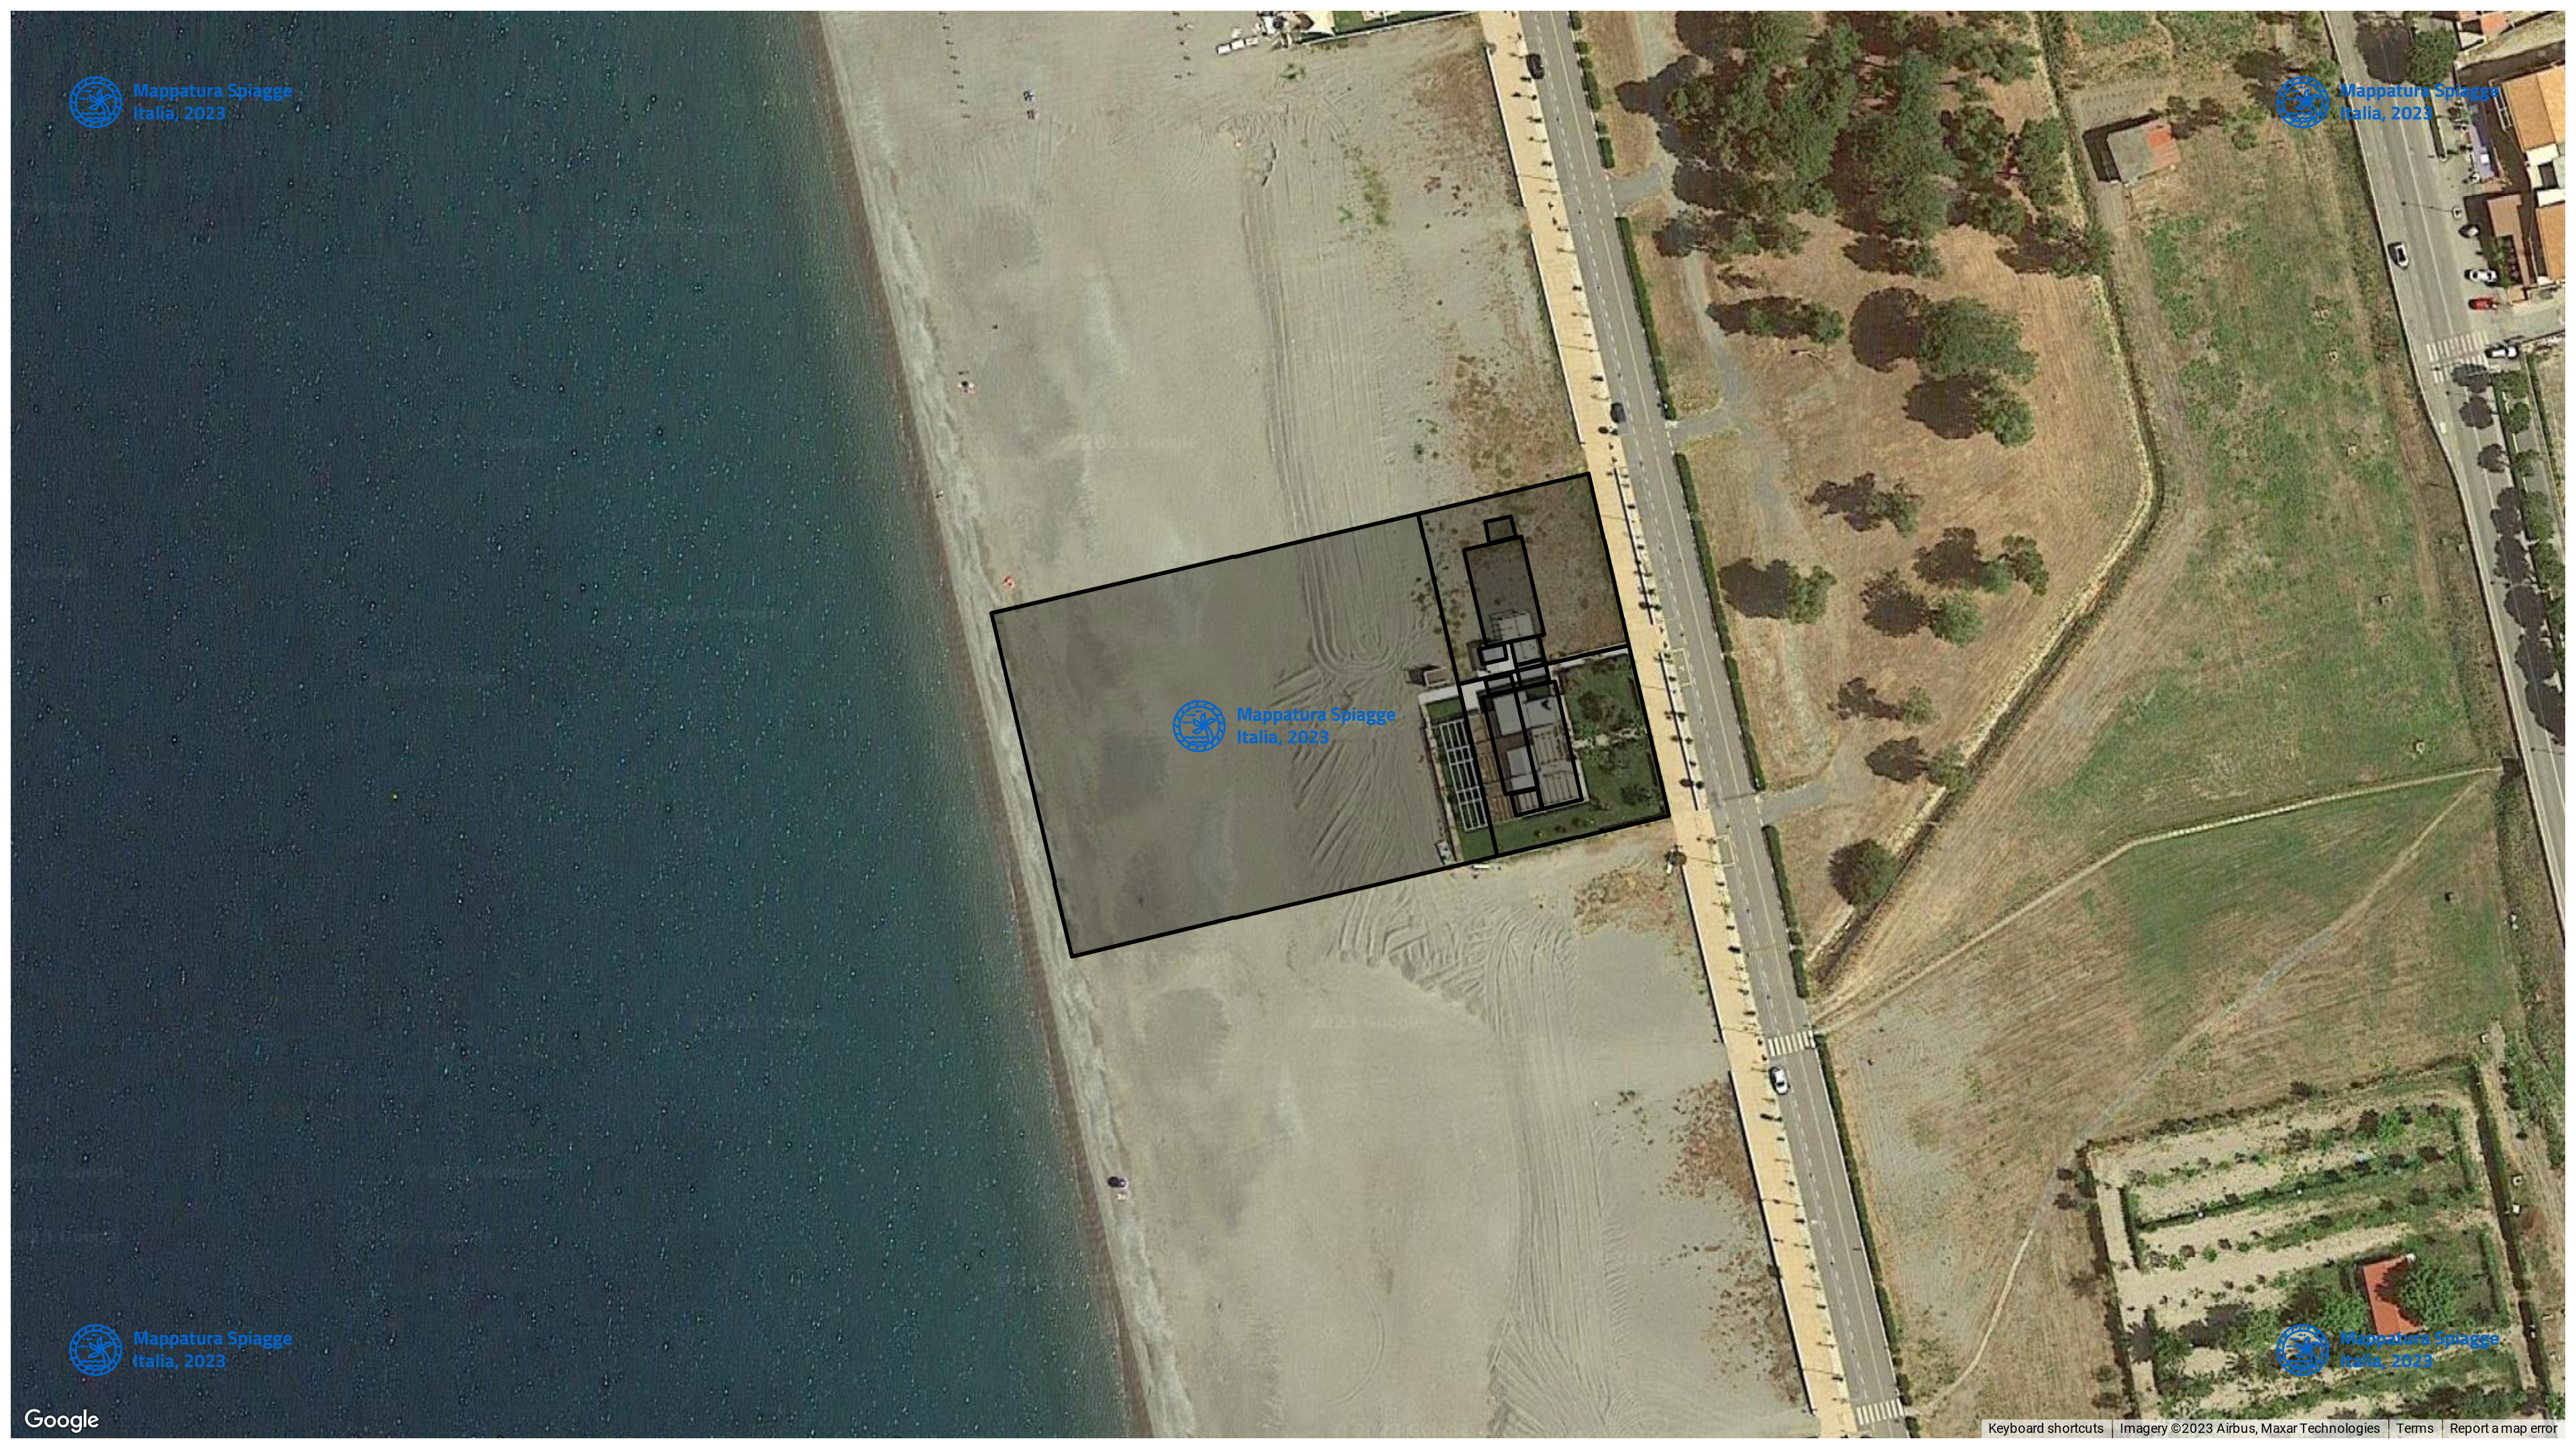 Foto Satellitare - Google Maps - Comune Santa Maria Del Cedro, Concessione: N. 206 / 2020 del 21-09-2023